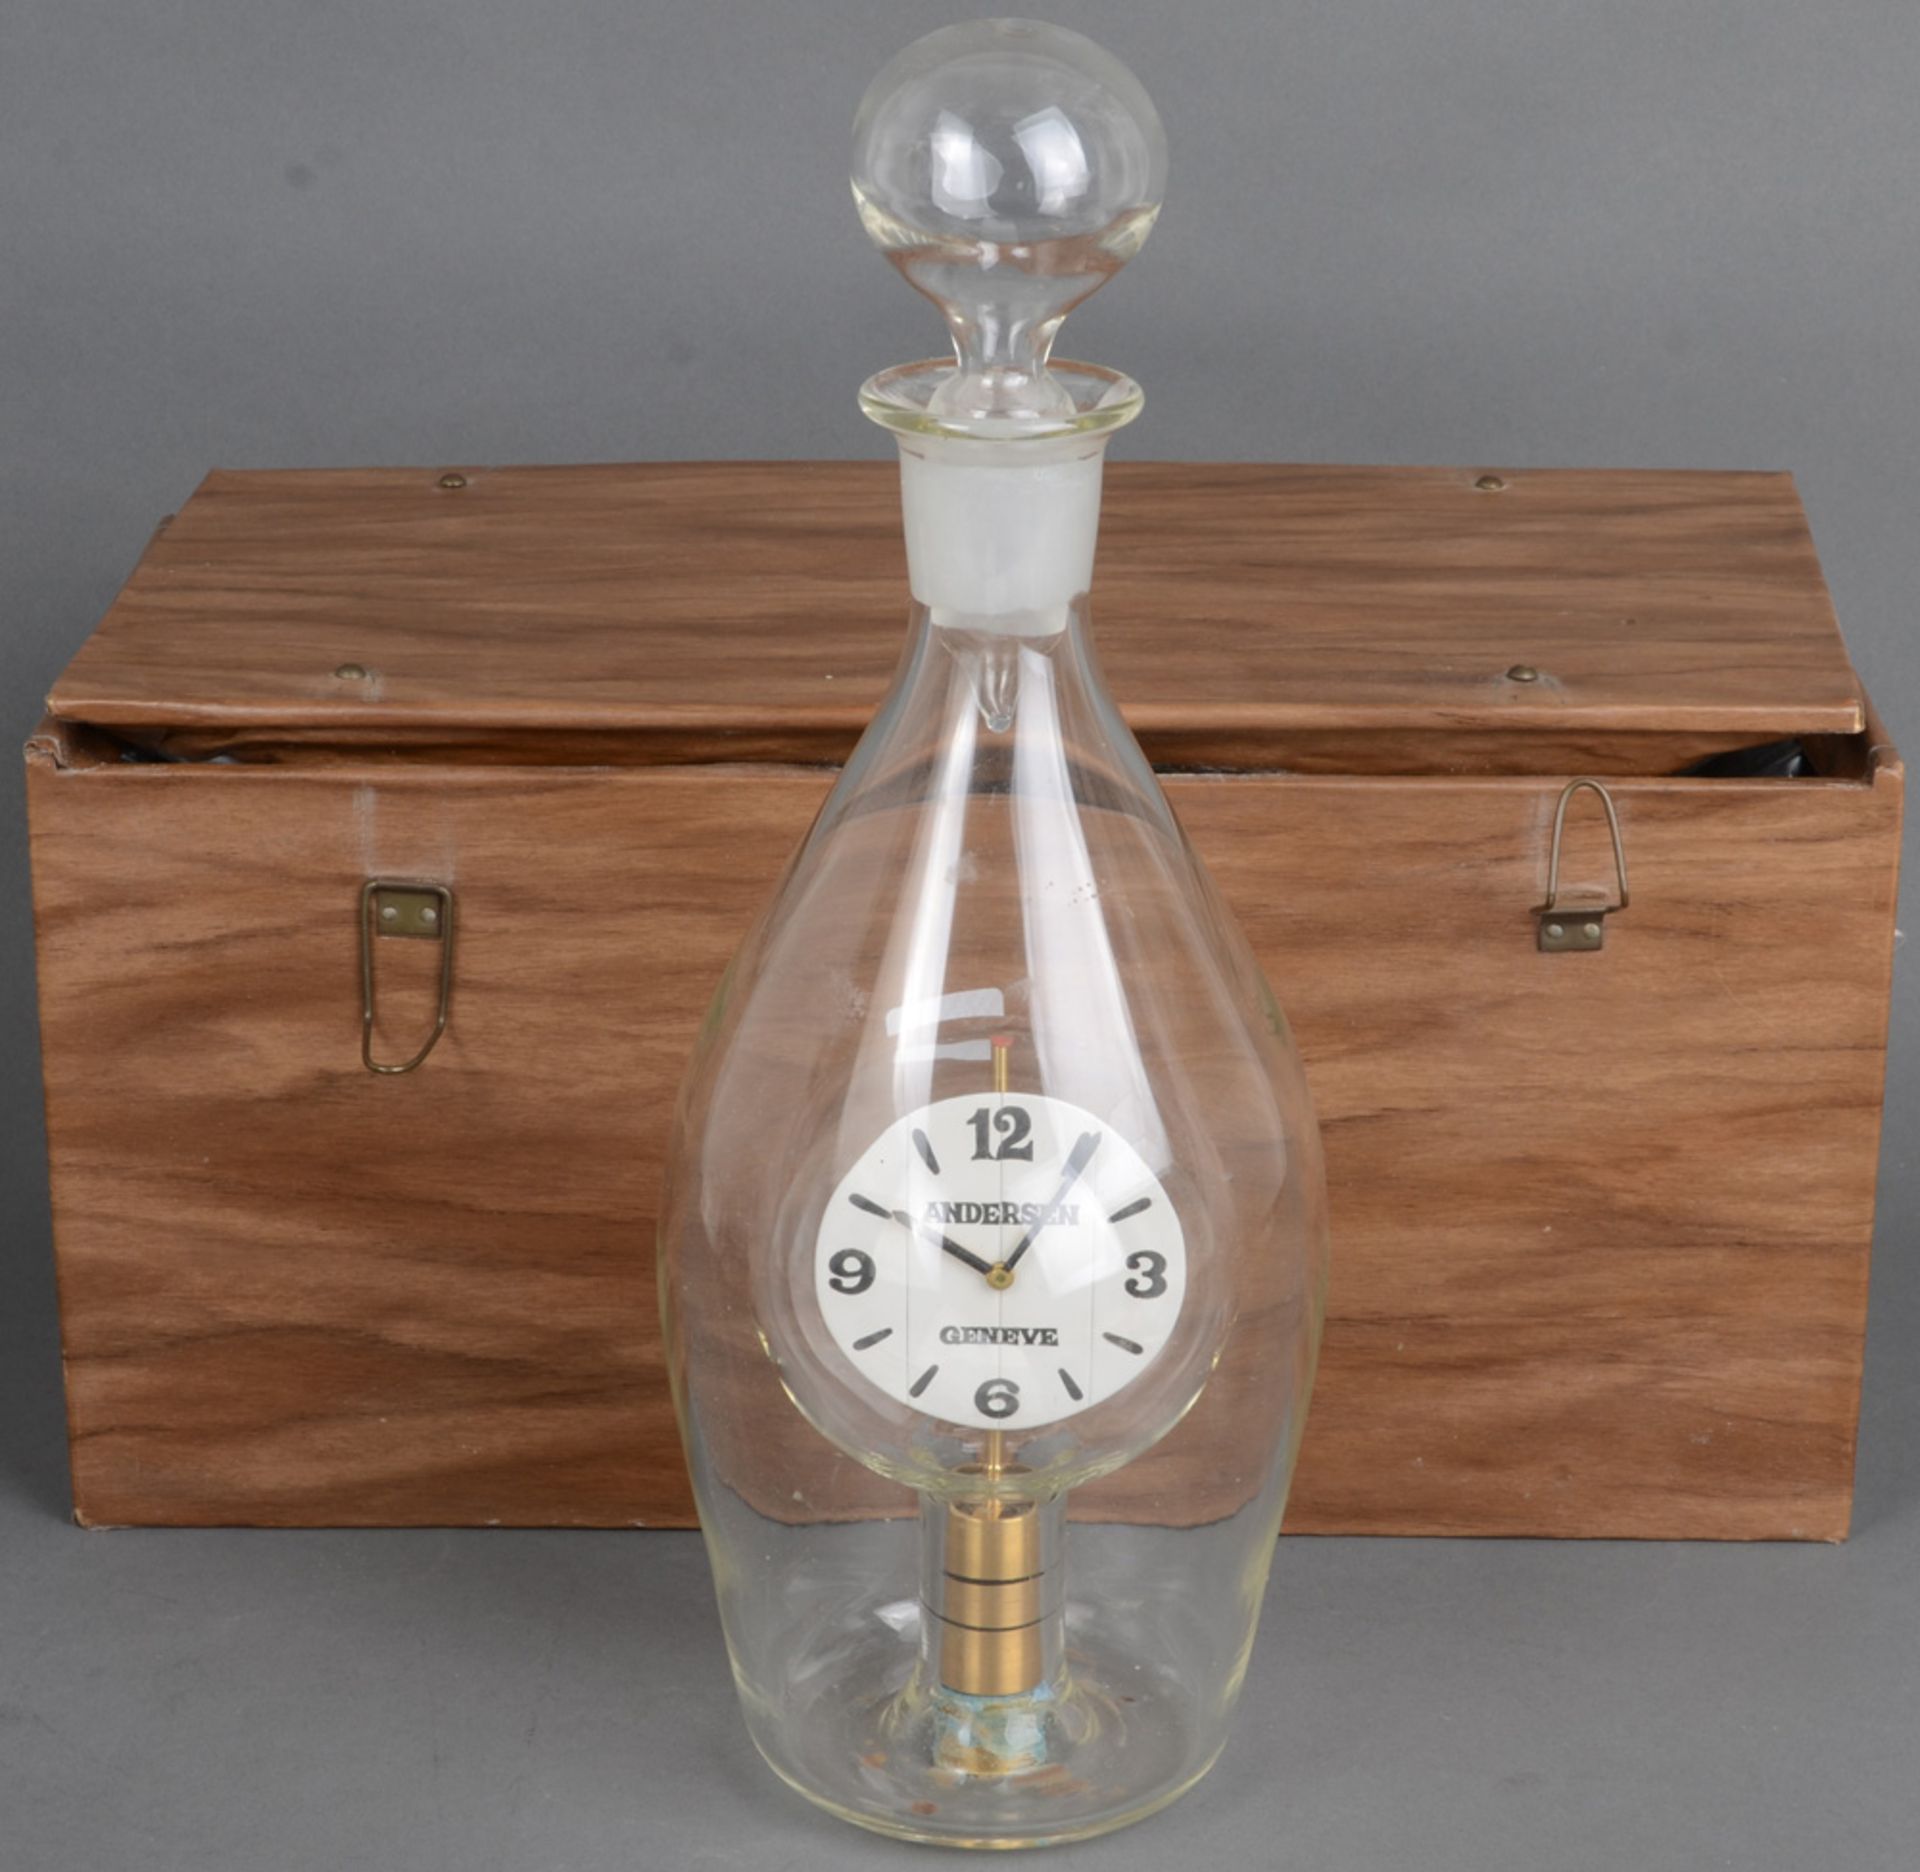 Flaschenuhr „Janus“. Genf, Meister Svend Andersen (*1942). Farbloses Glas, mit eingebauter Uhr; dazu